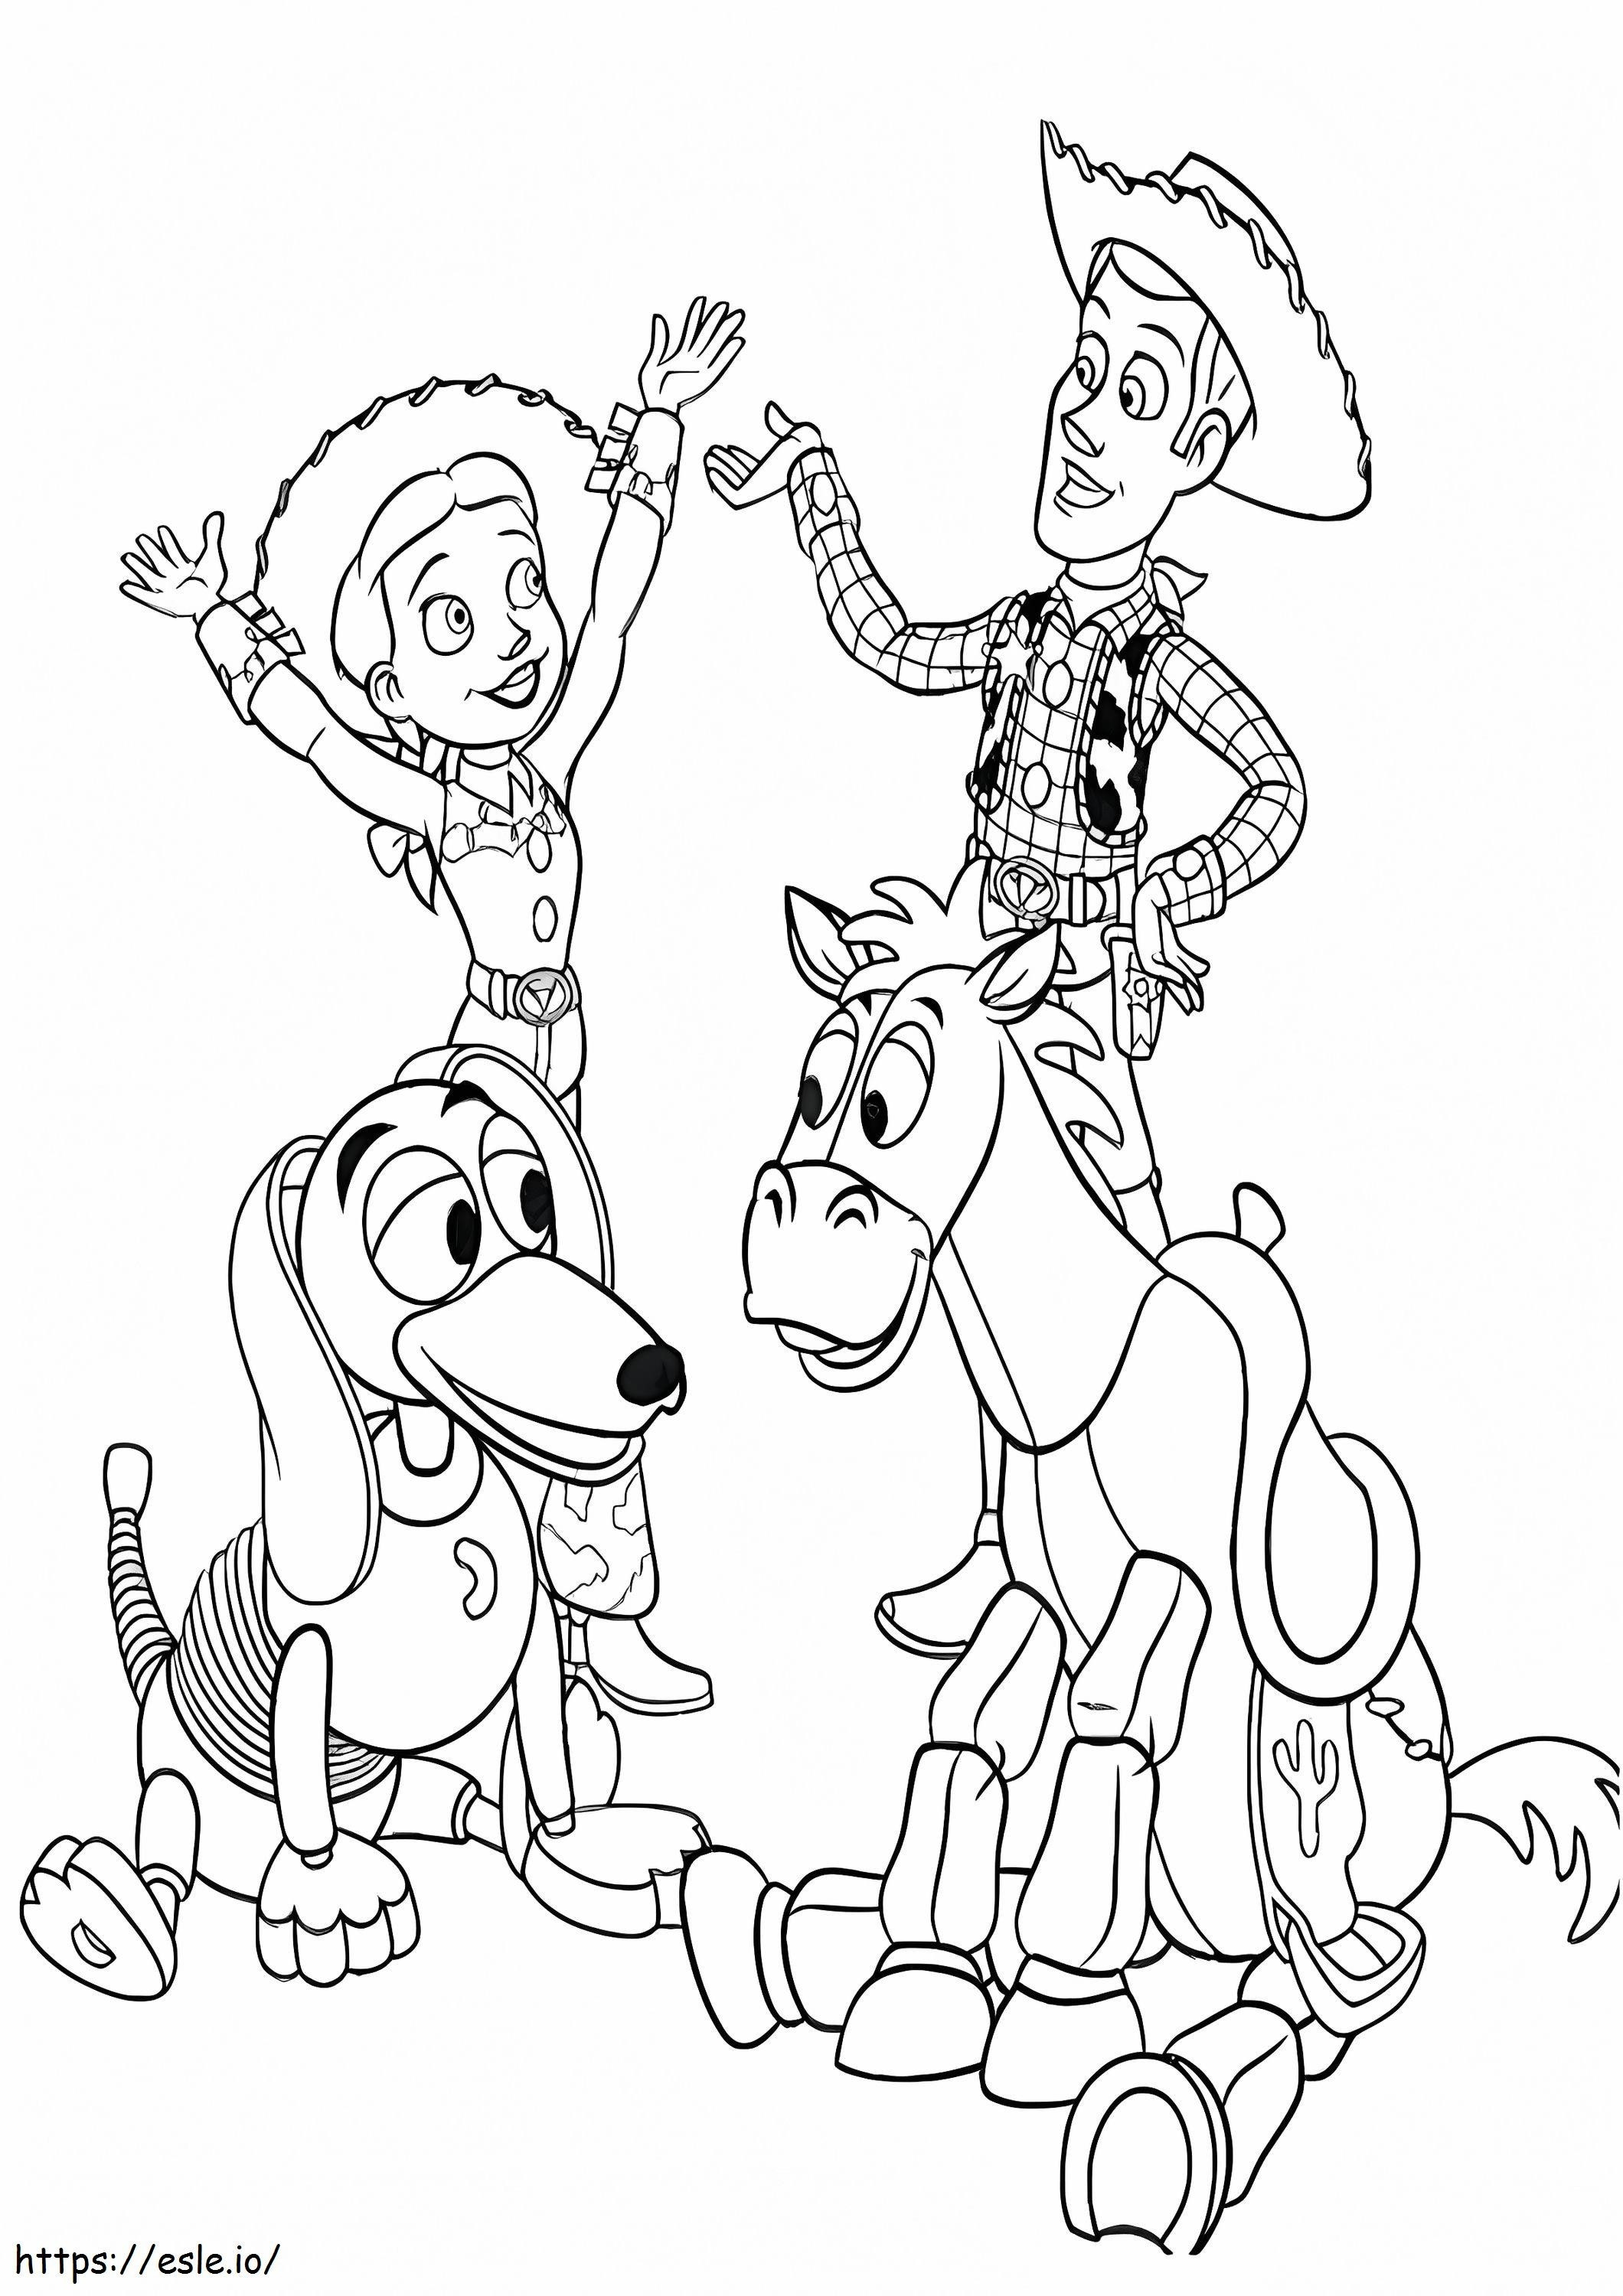 Woody și Jessie cu prietenii de colorat